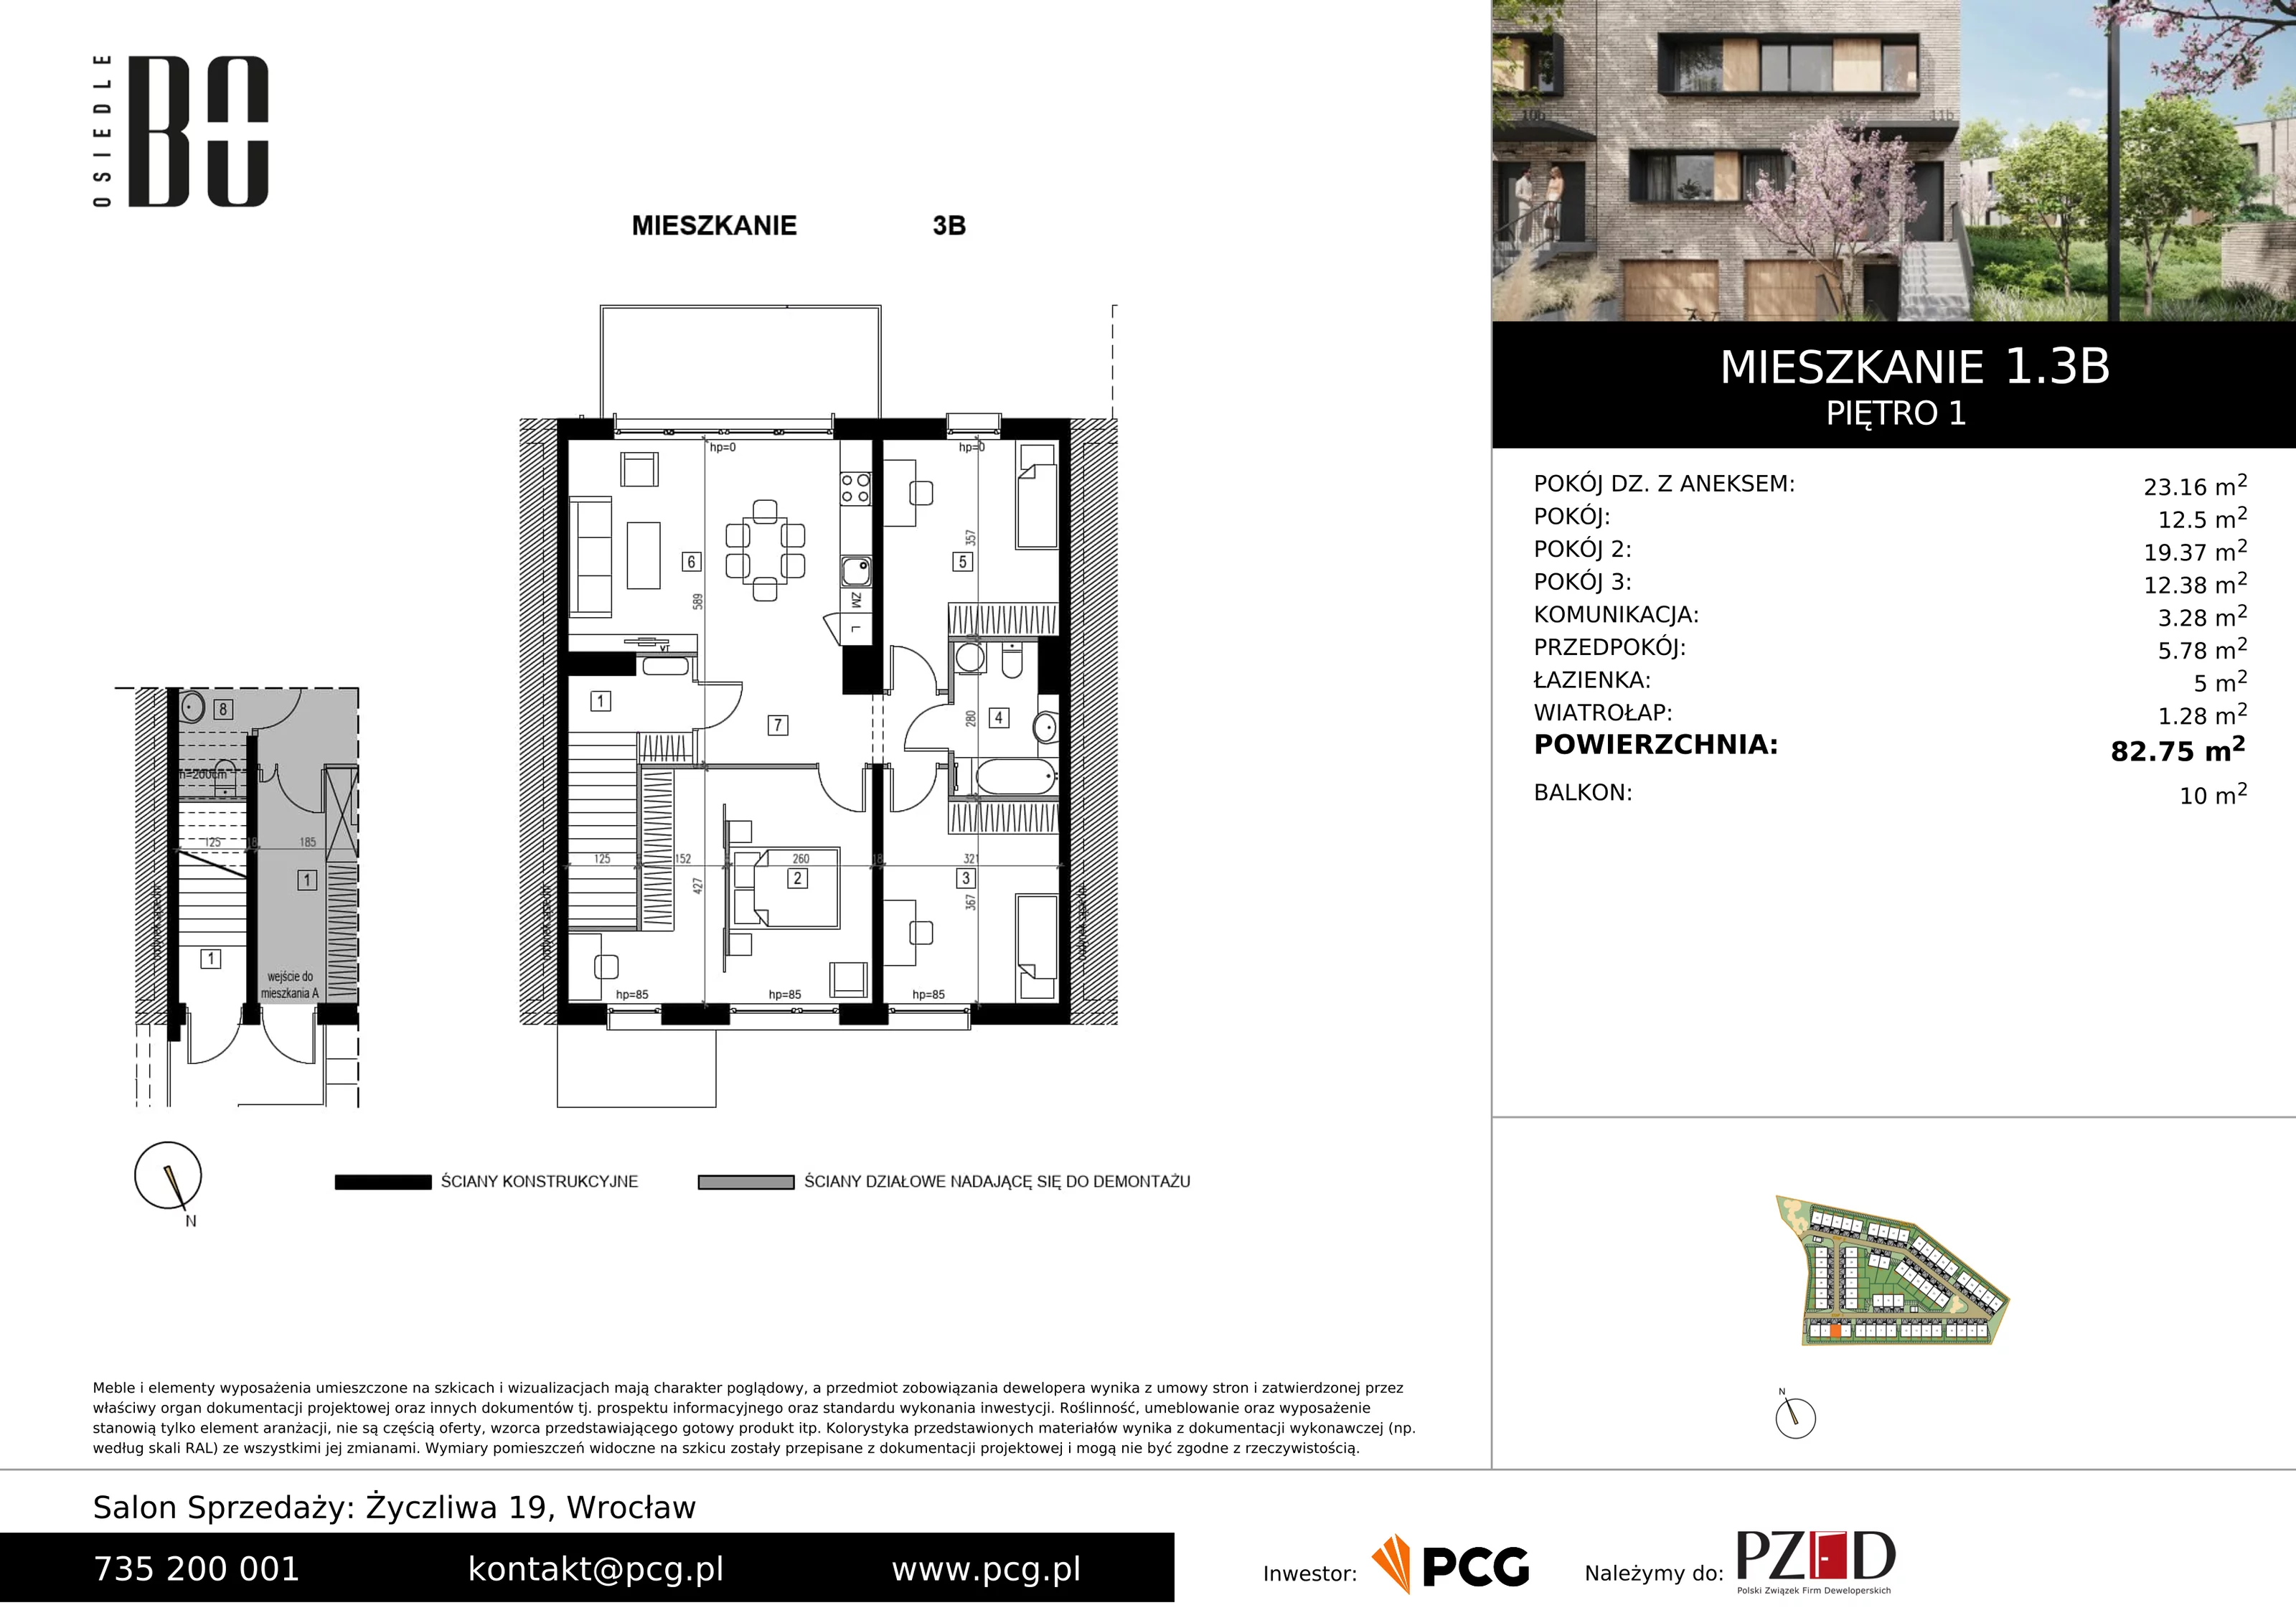 Apartament 82,75 m², piętro 1, oferta nr 1.3B, Osiedle BO, Wrocław, Kowale, ul. Bociana